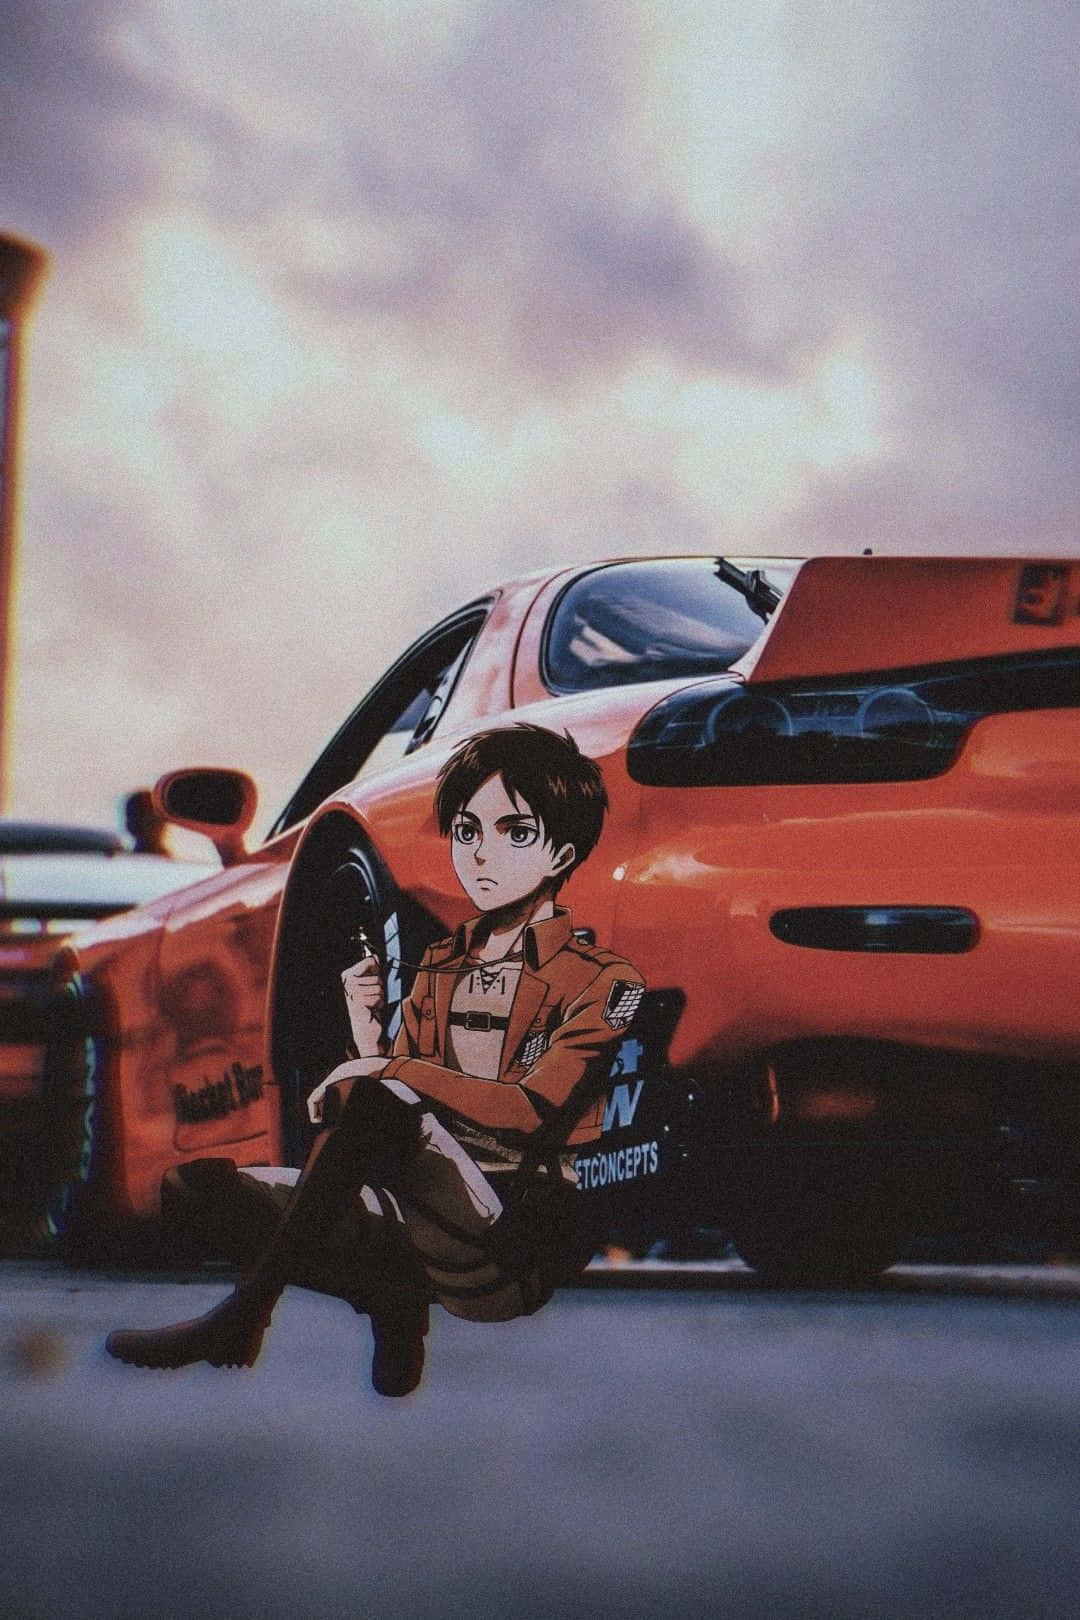 Erenyeager Orange Car Jdm Anime: Eren Yeager Orange Car Jdm Anime Wallpaper